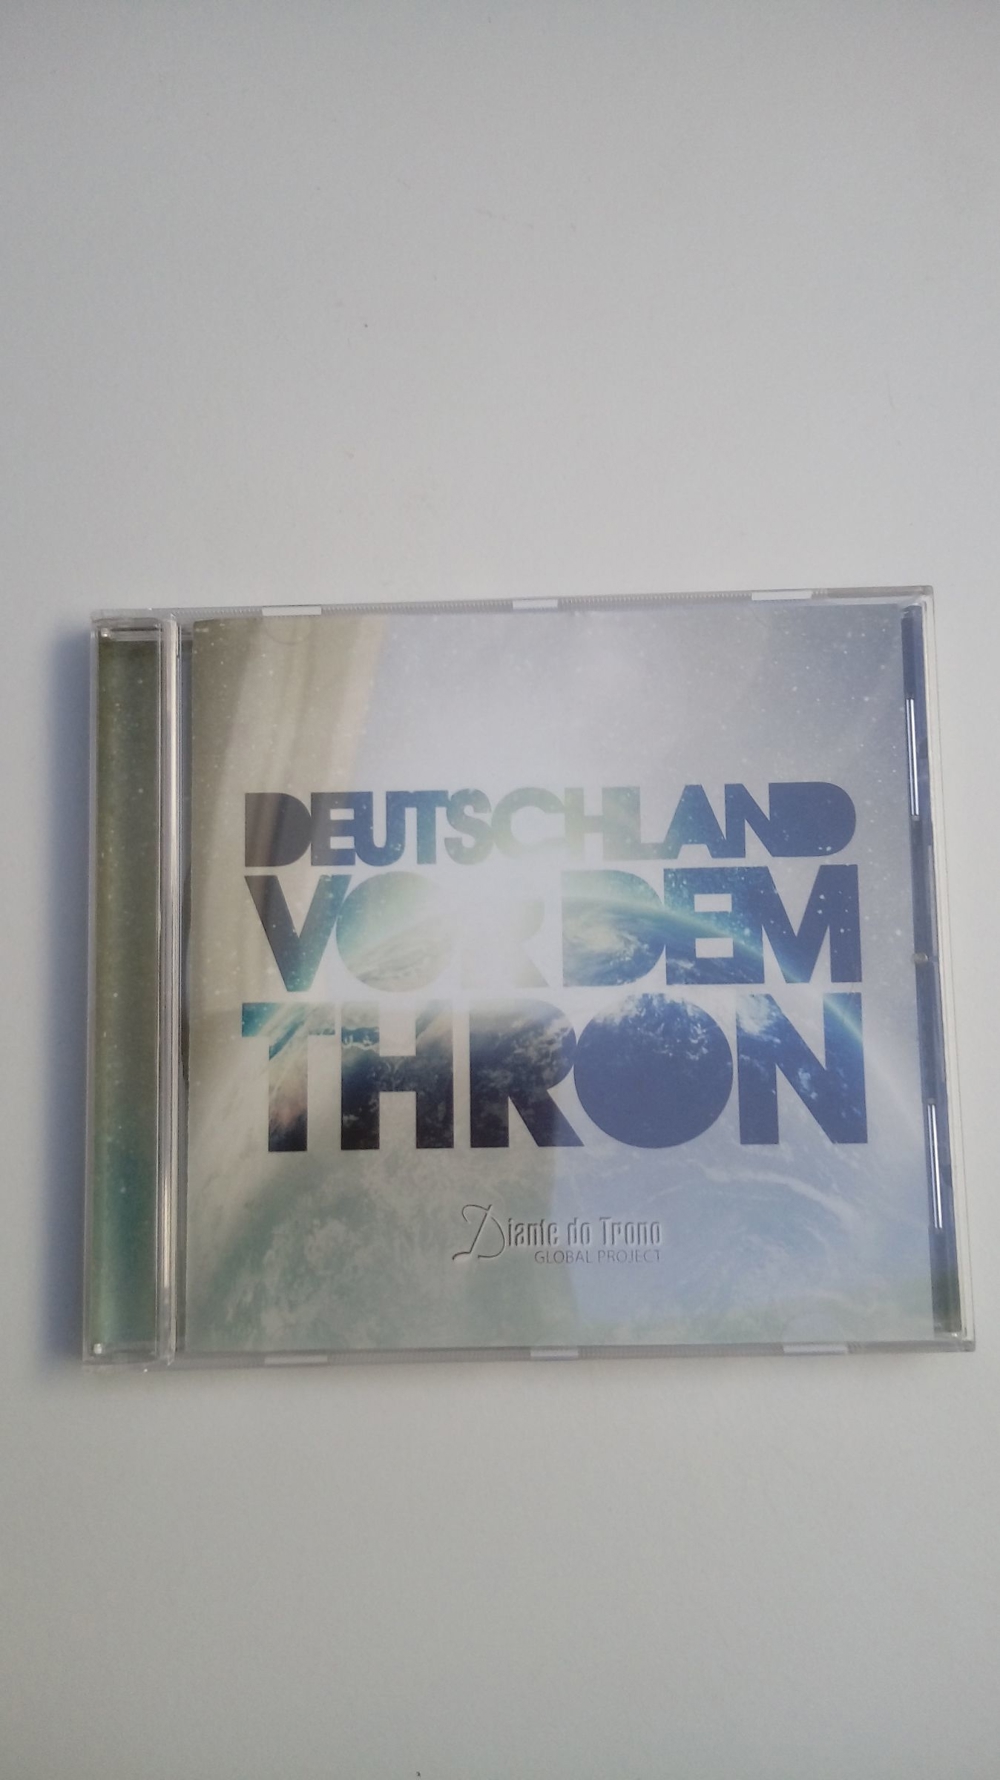 CDs Lobpreis Deutschland vor dem Thron